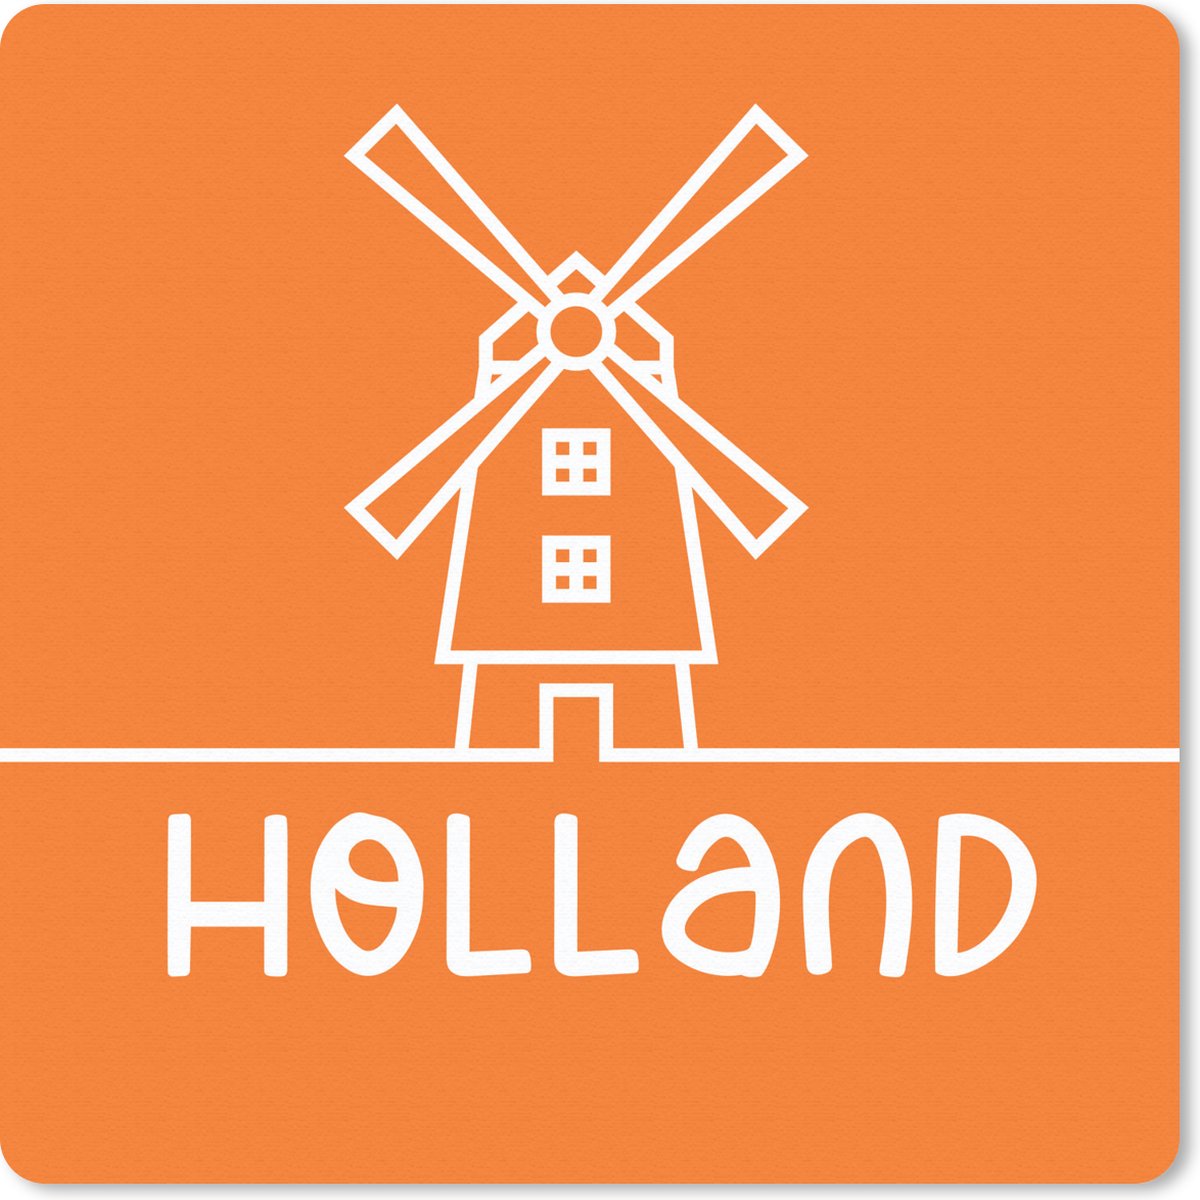 Muismat - Holland - Molen - Oranje - 20x20